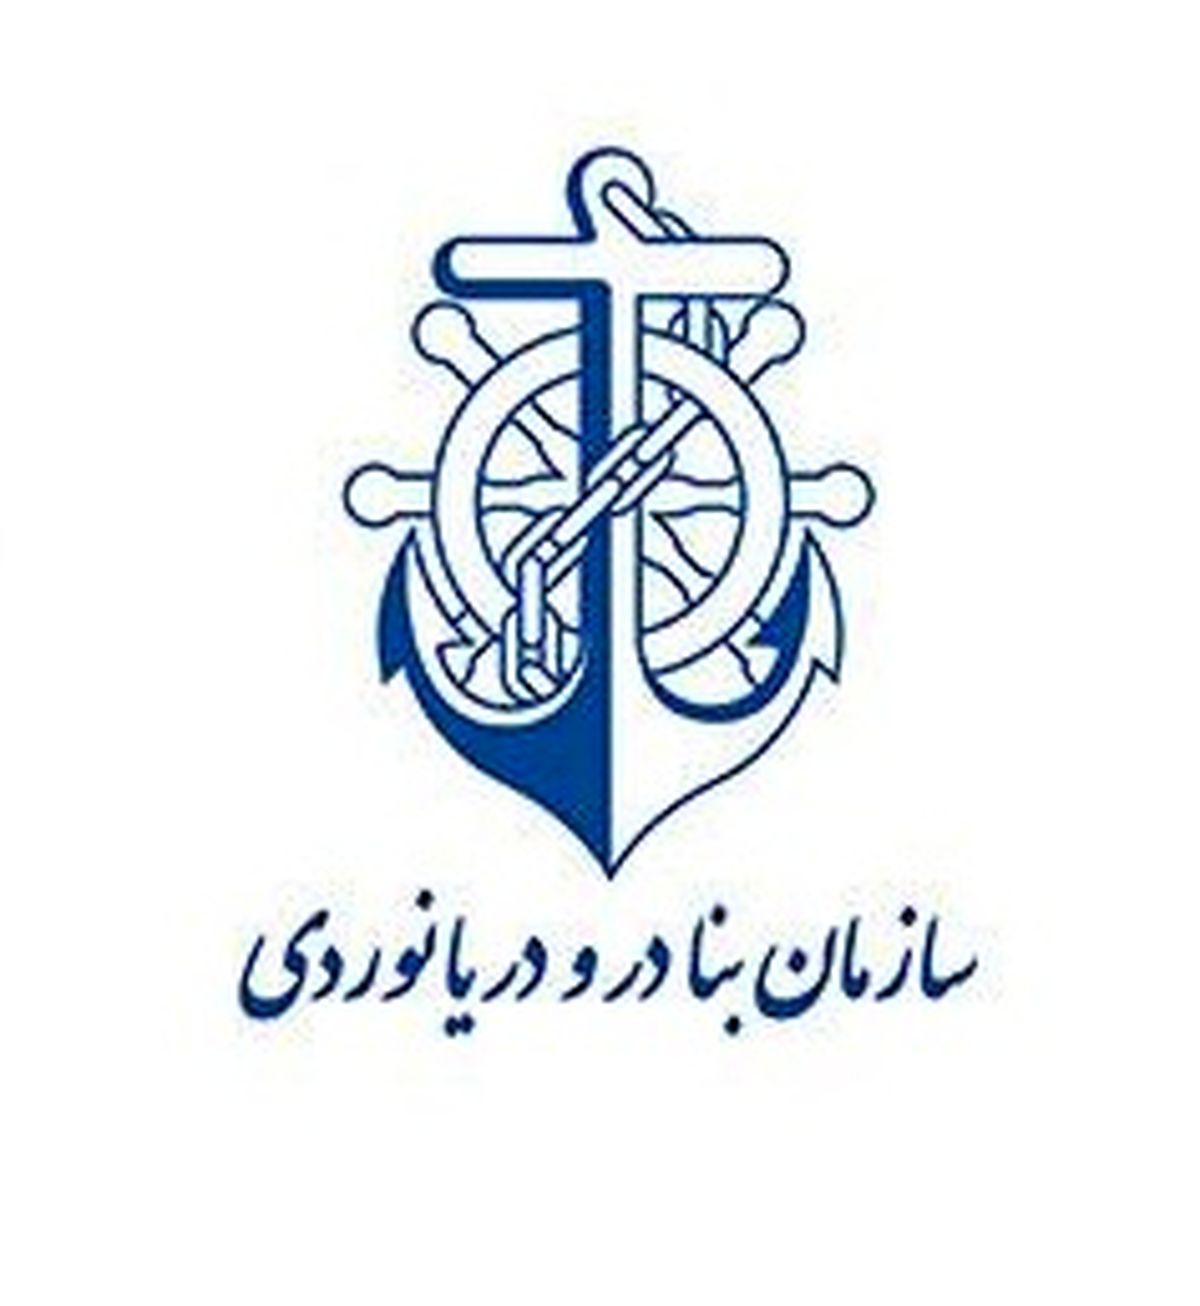 سهم حمل و نقل ریلی در منطقه ویژه اقتصادی بندر امام خمینی(ره) ۱۴ درصد افزایش یافت